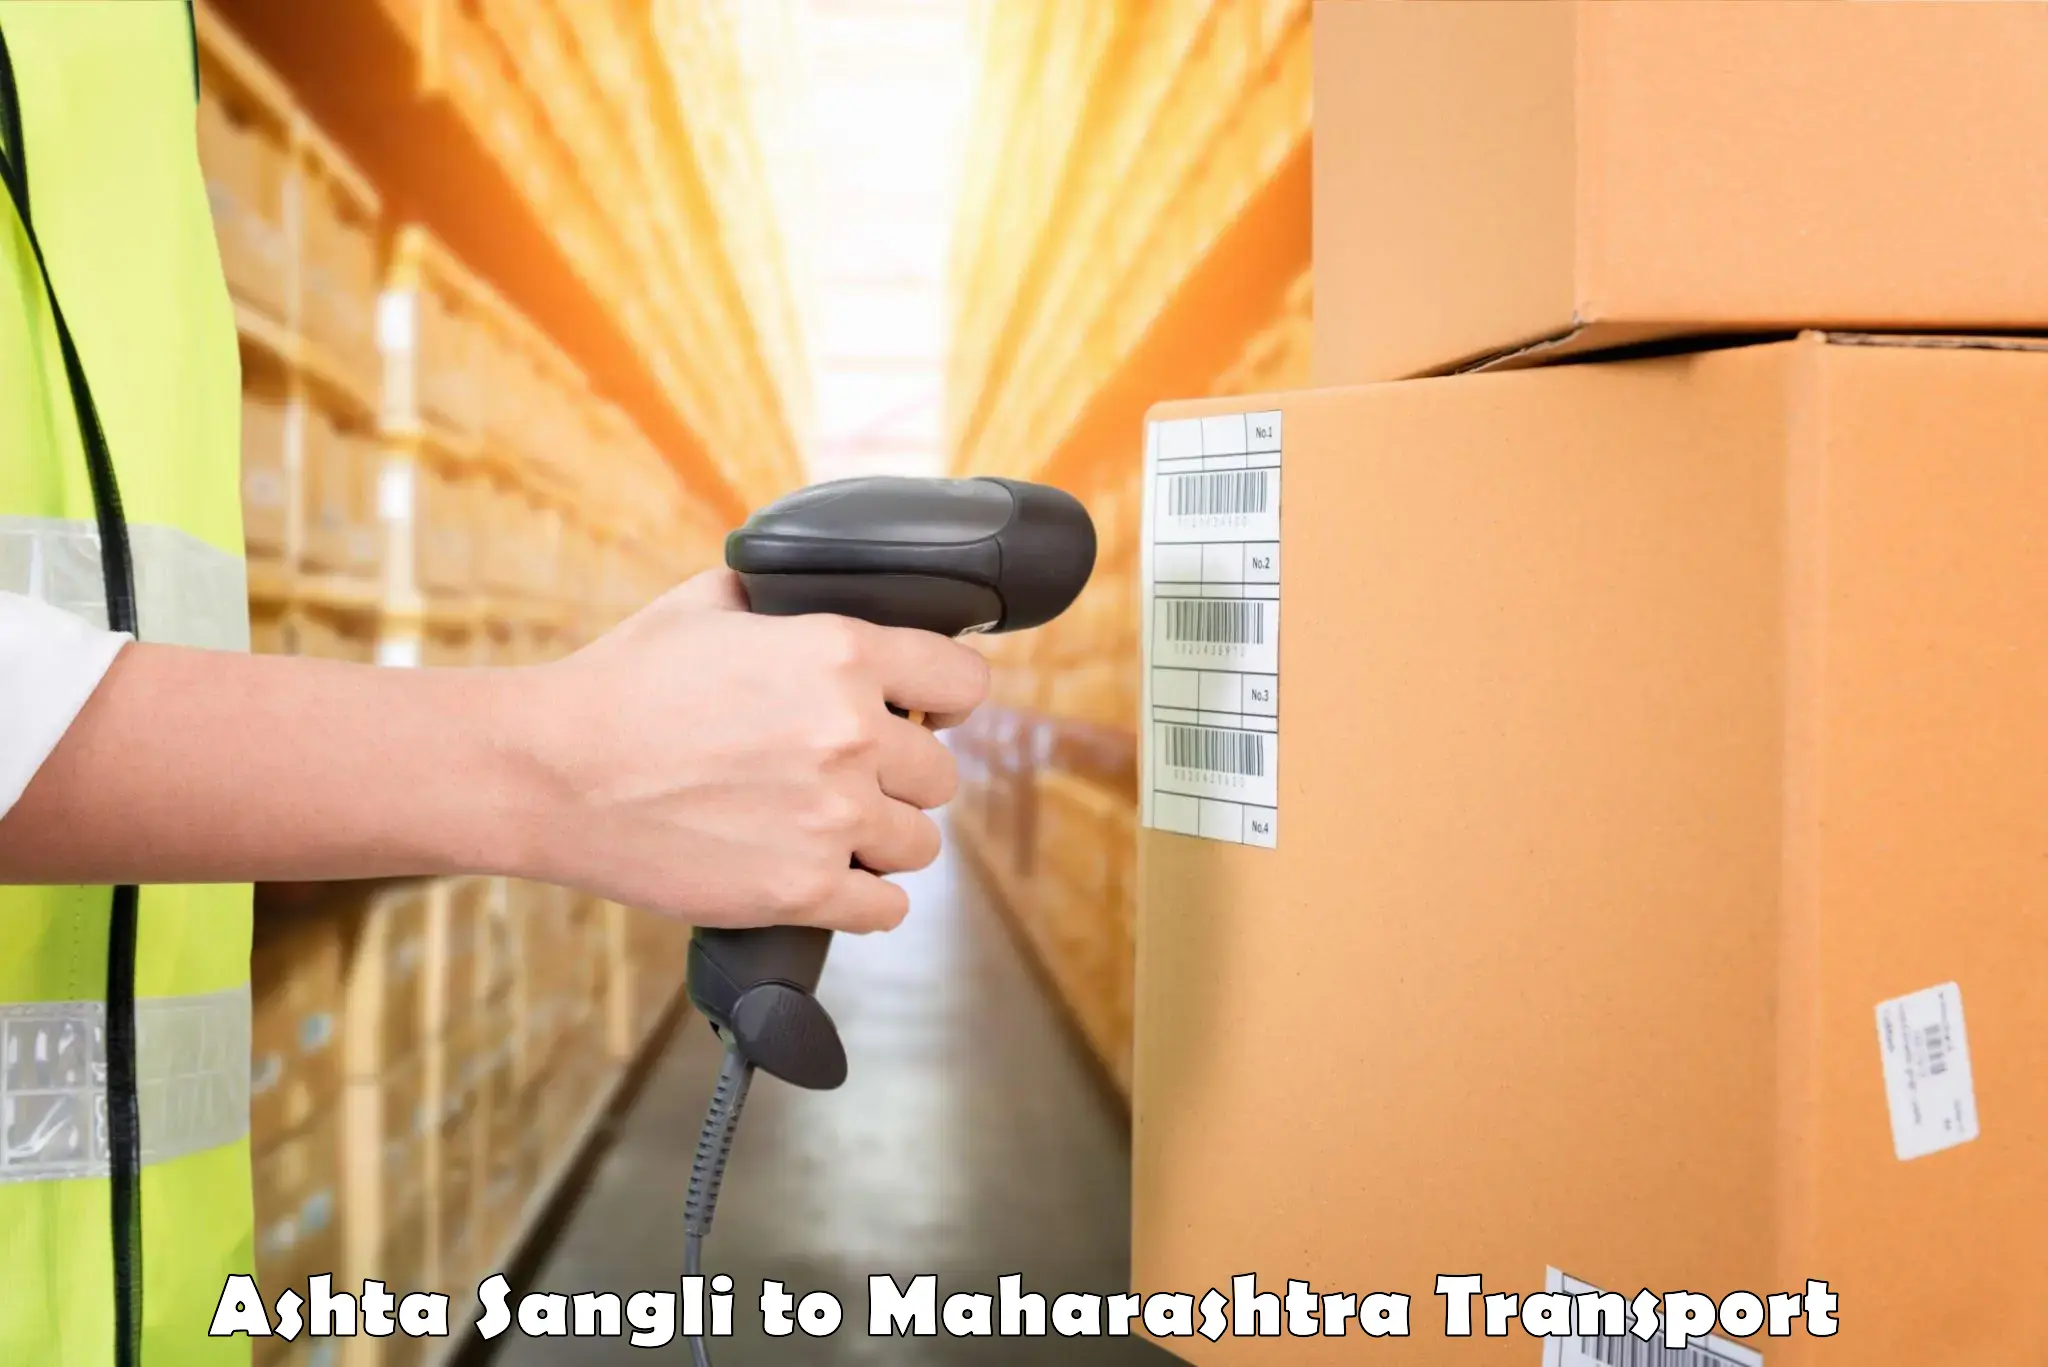 Logistics transportation services Ashta Sangli to Pune